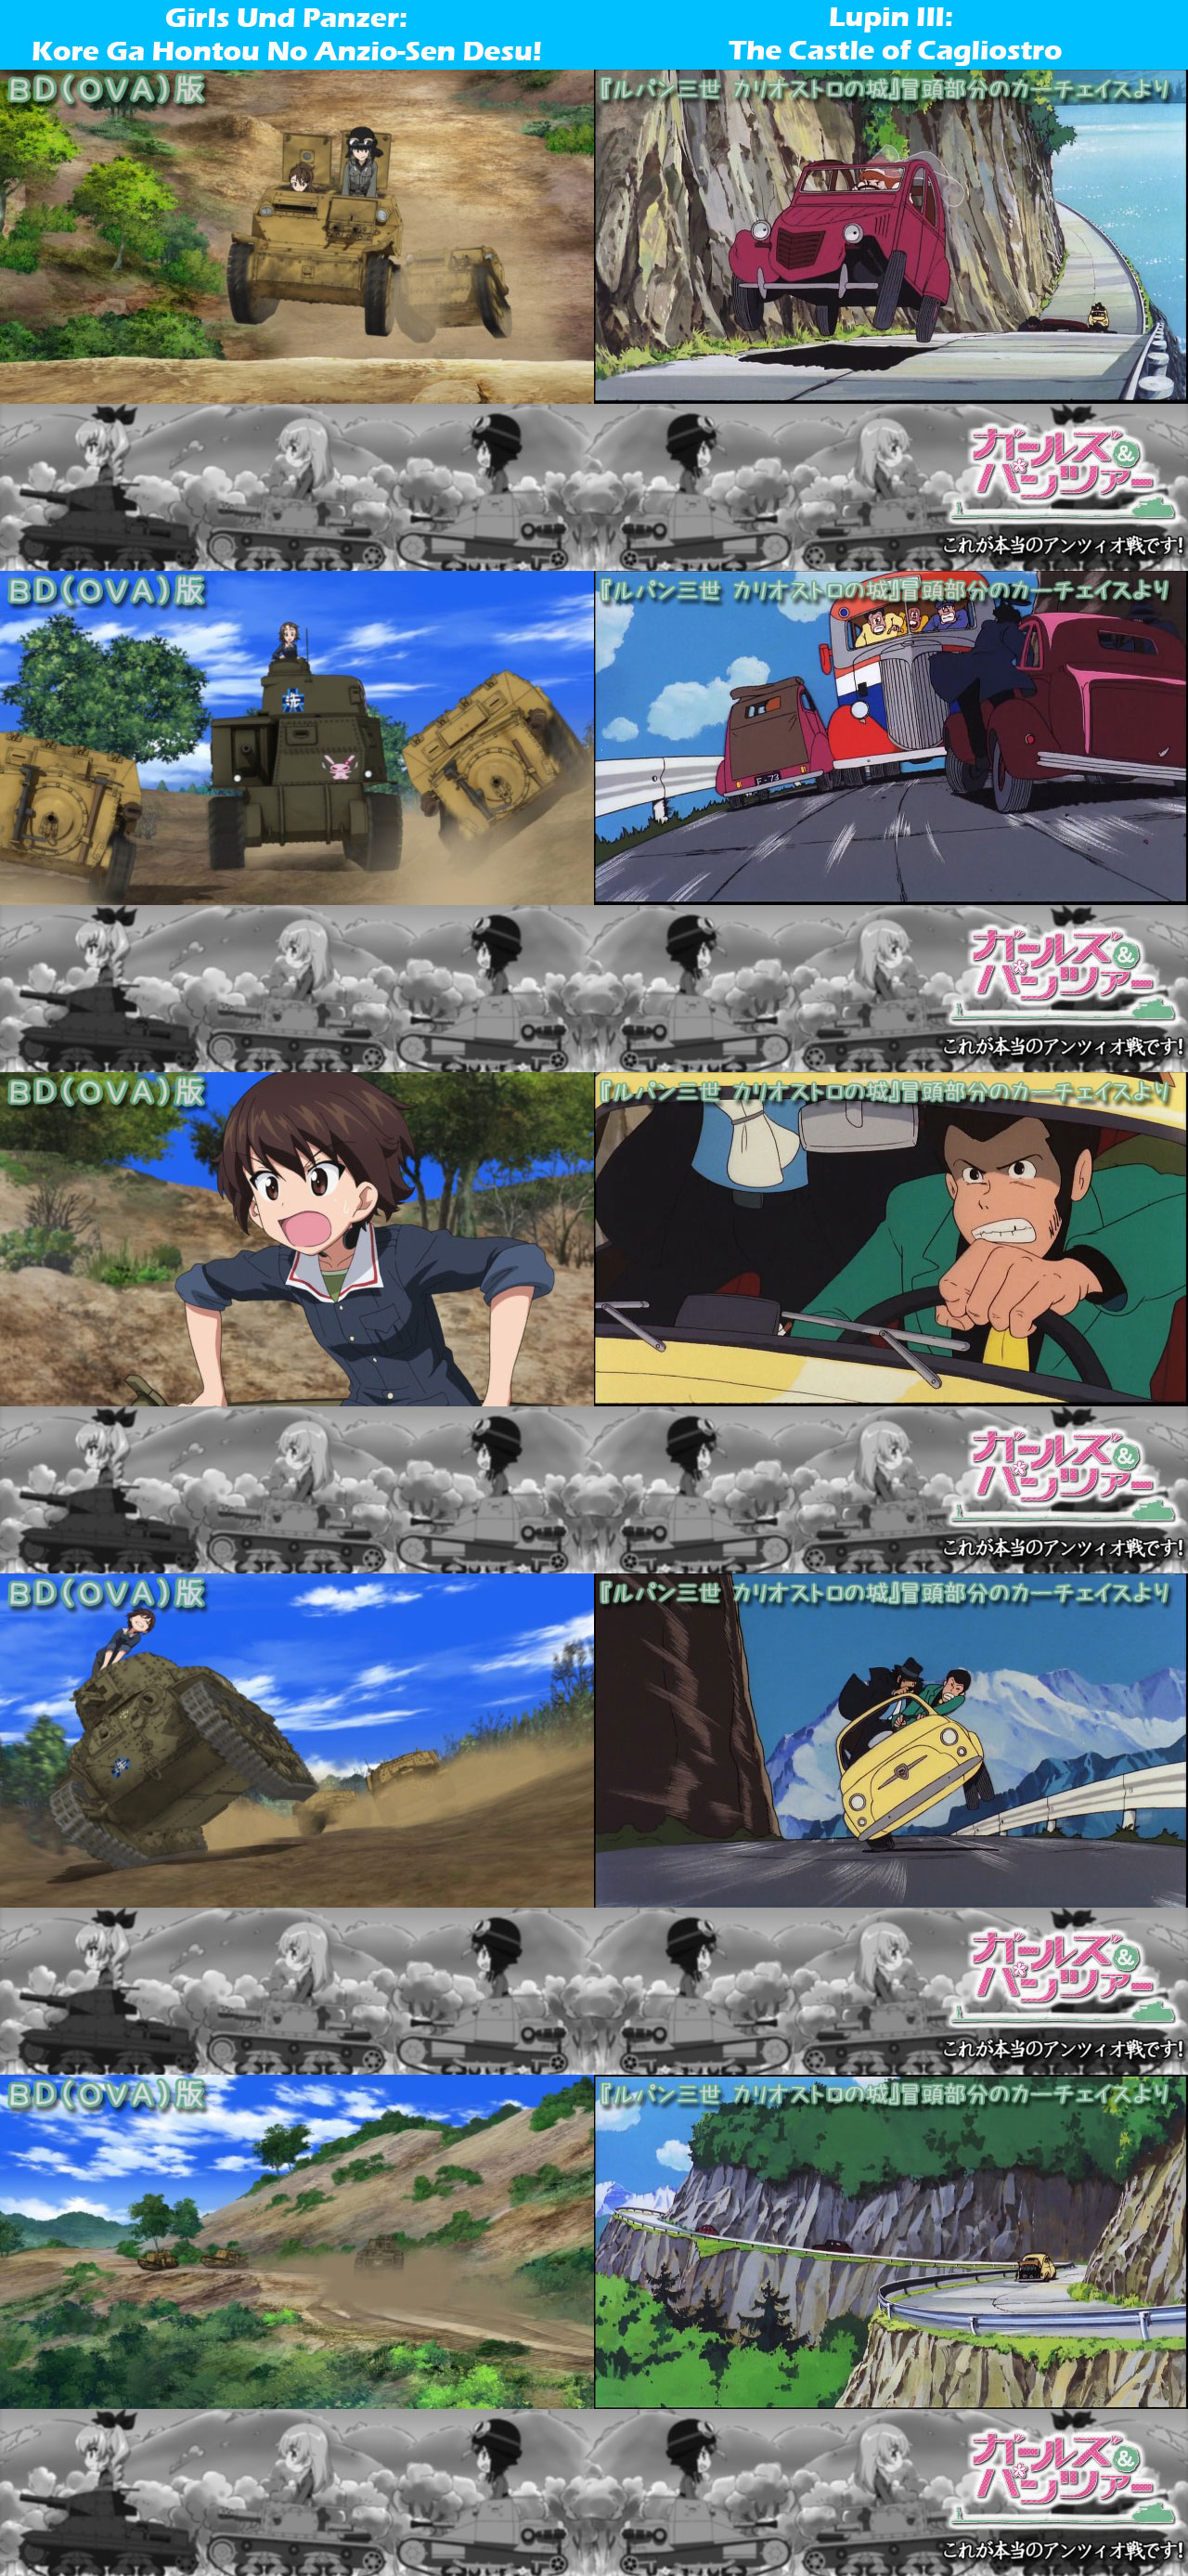 Girls-Und-Panzer-Kore-Ga-Hontou-No-Anzio-Sen-Desu-Lupin-III-The-Castle-of-Cagliostro-Homage-Comparison